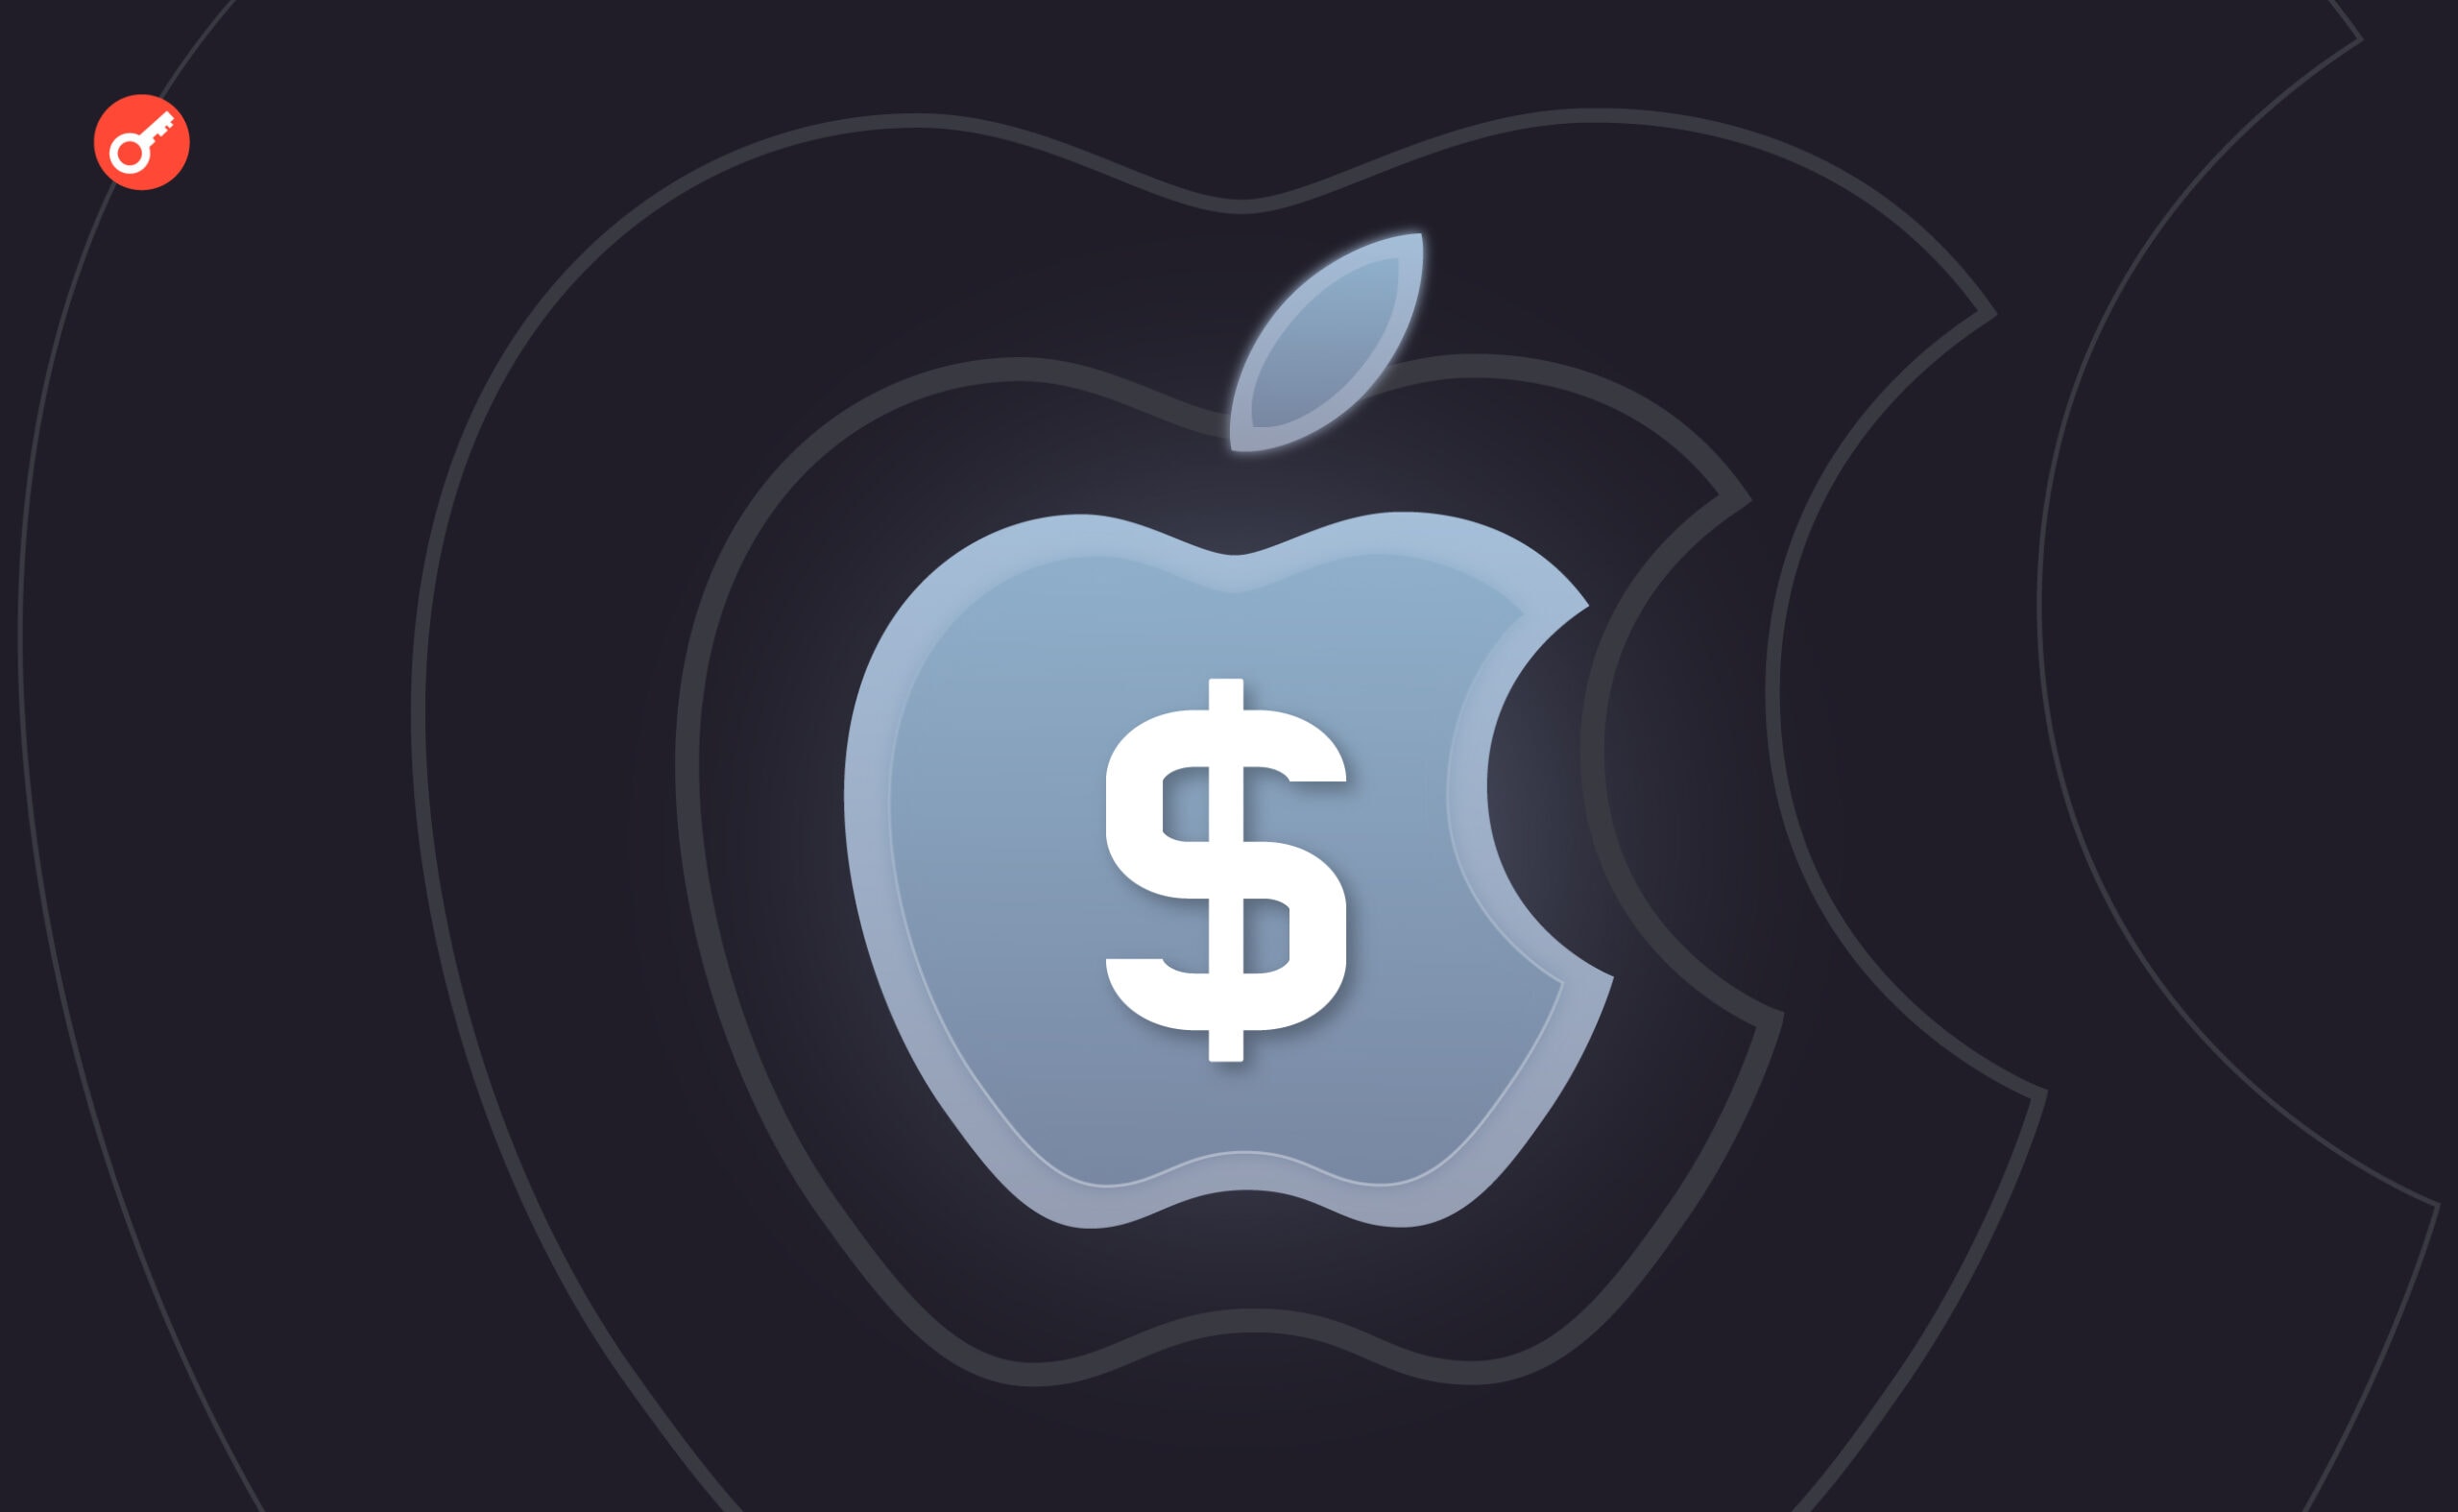 Компанія Apple запускає ощадний рахунок. Головний колаж новини.